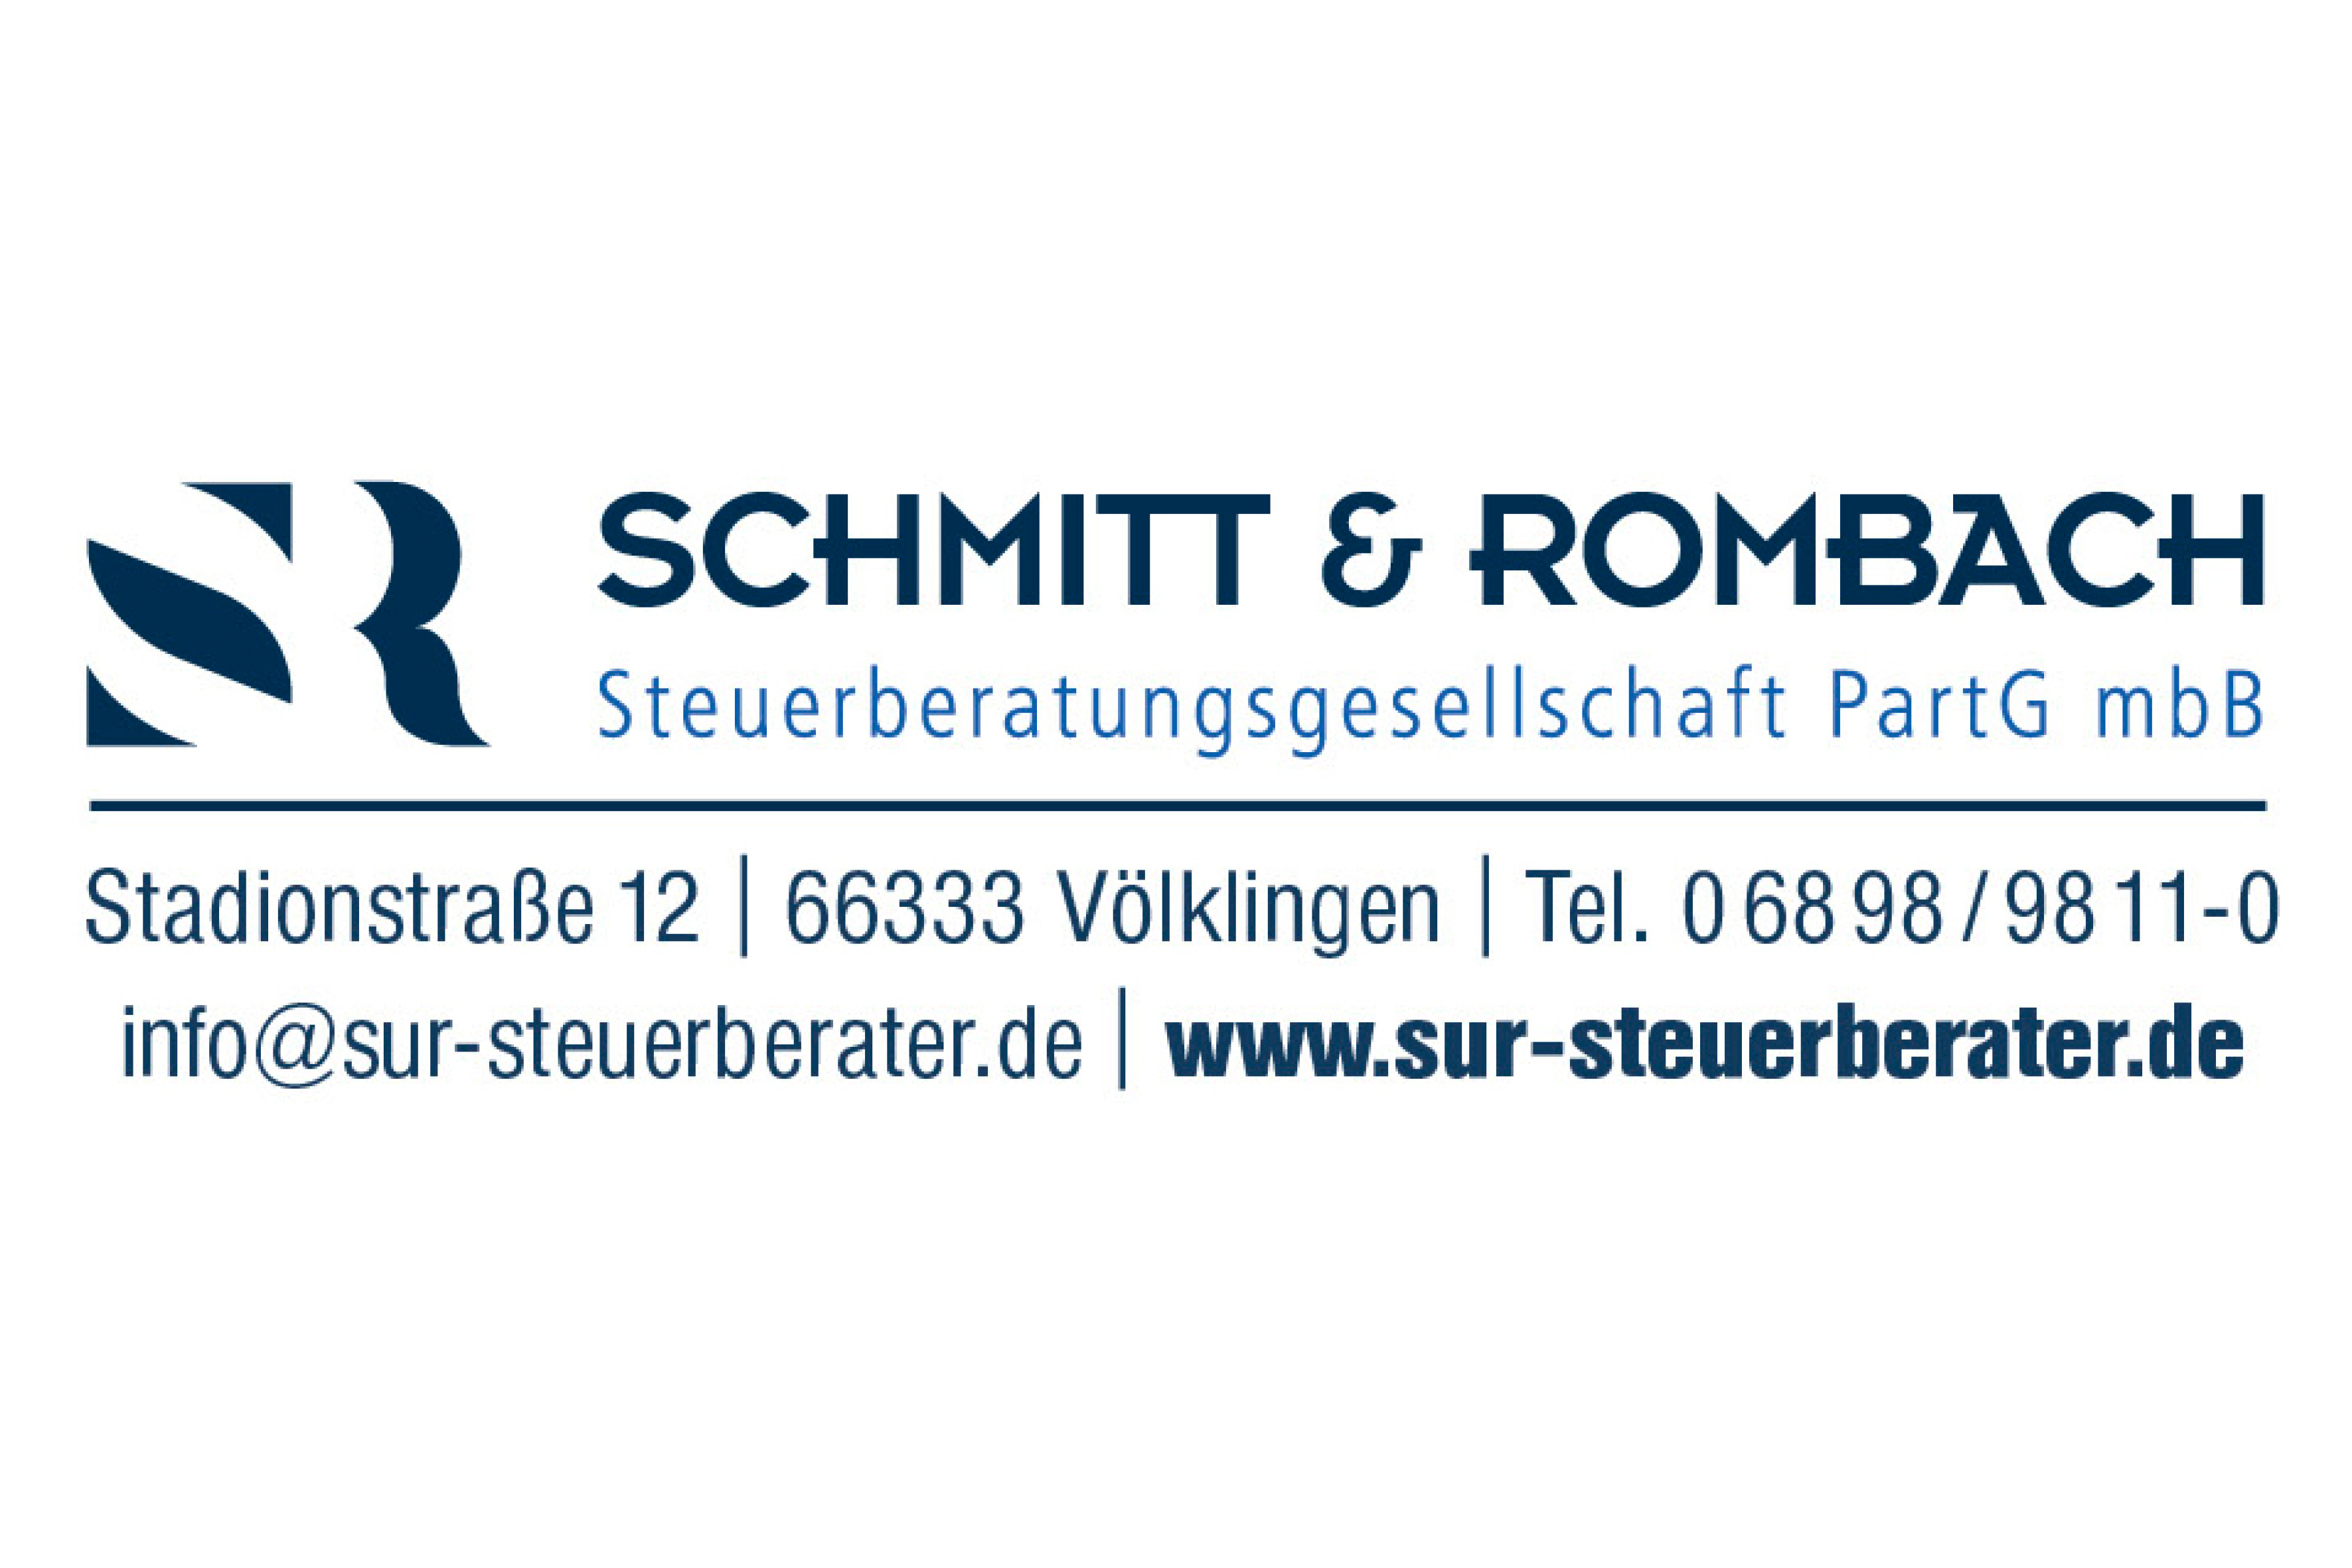 Schmitt & Rombach Steuerberatungsgesellschaft PartG mbB